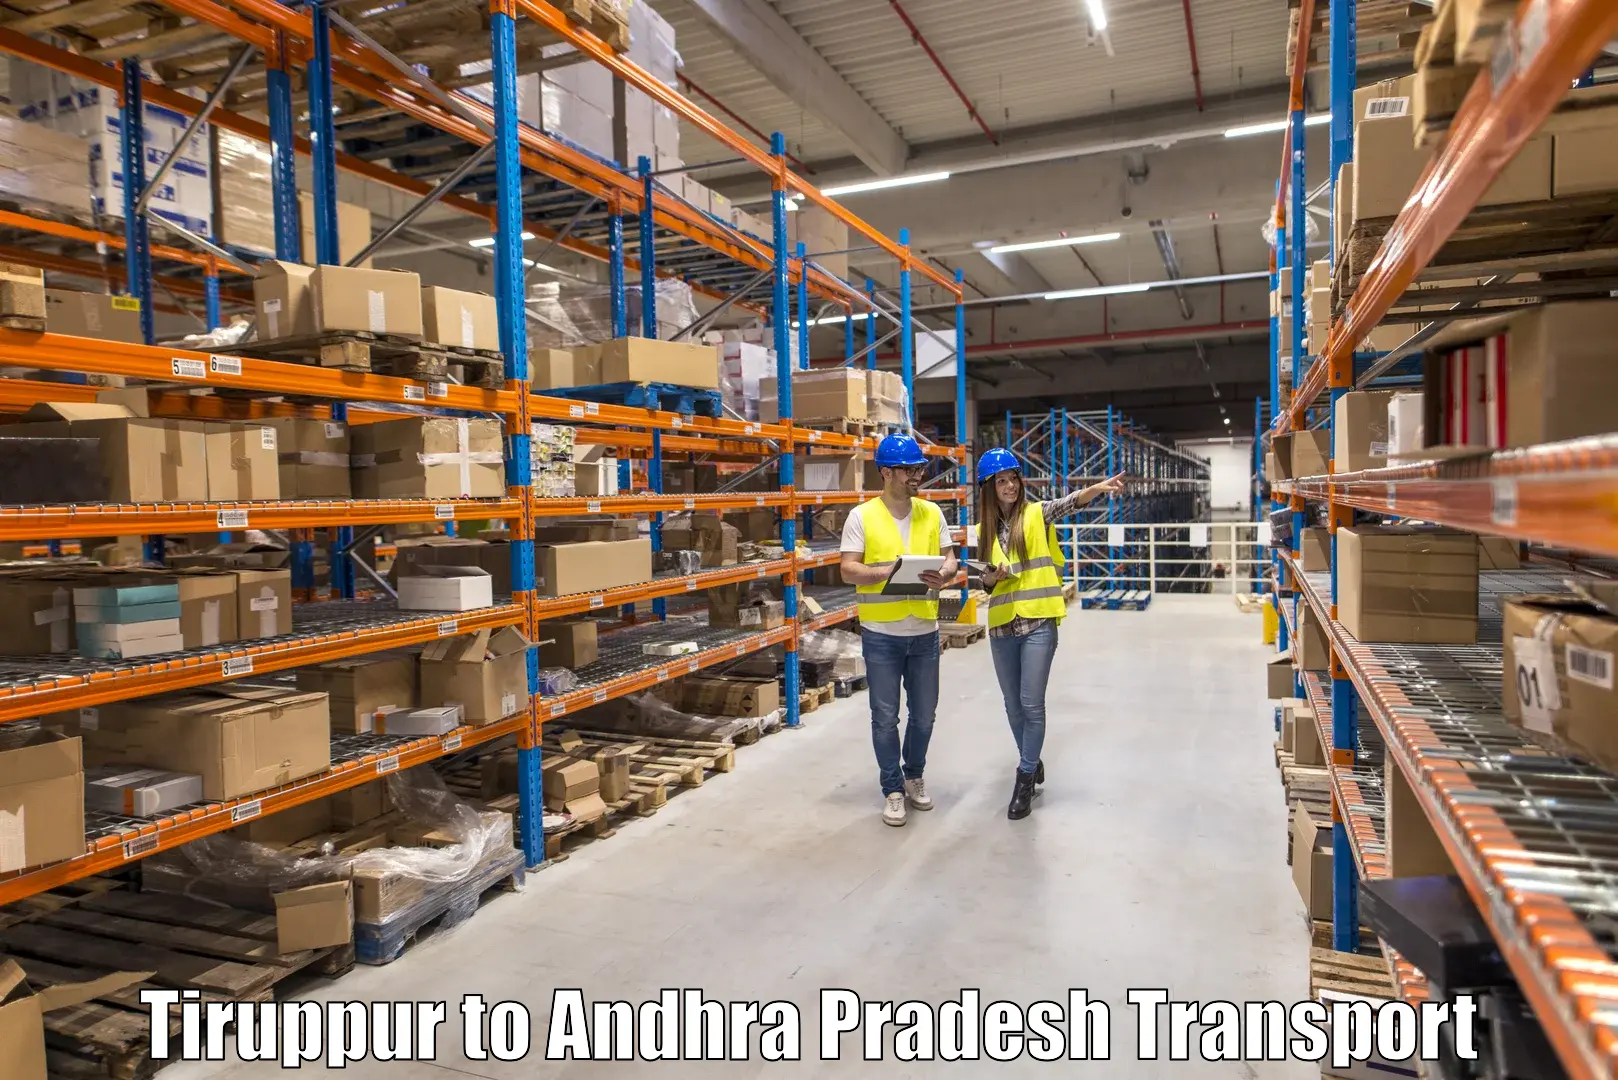 Shipping partner Tiruppur to Yellamanchili